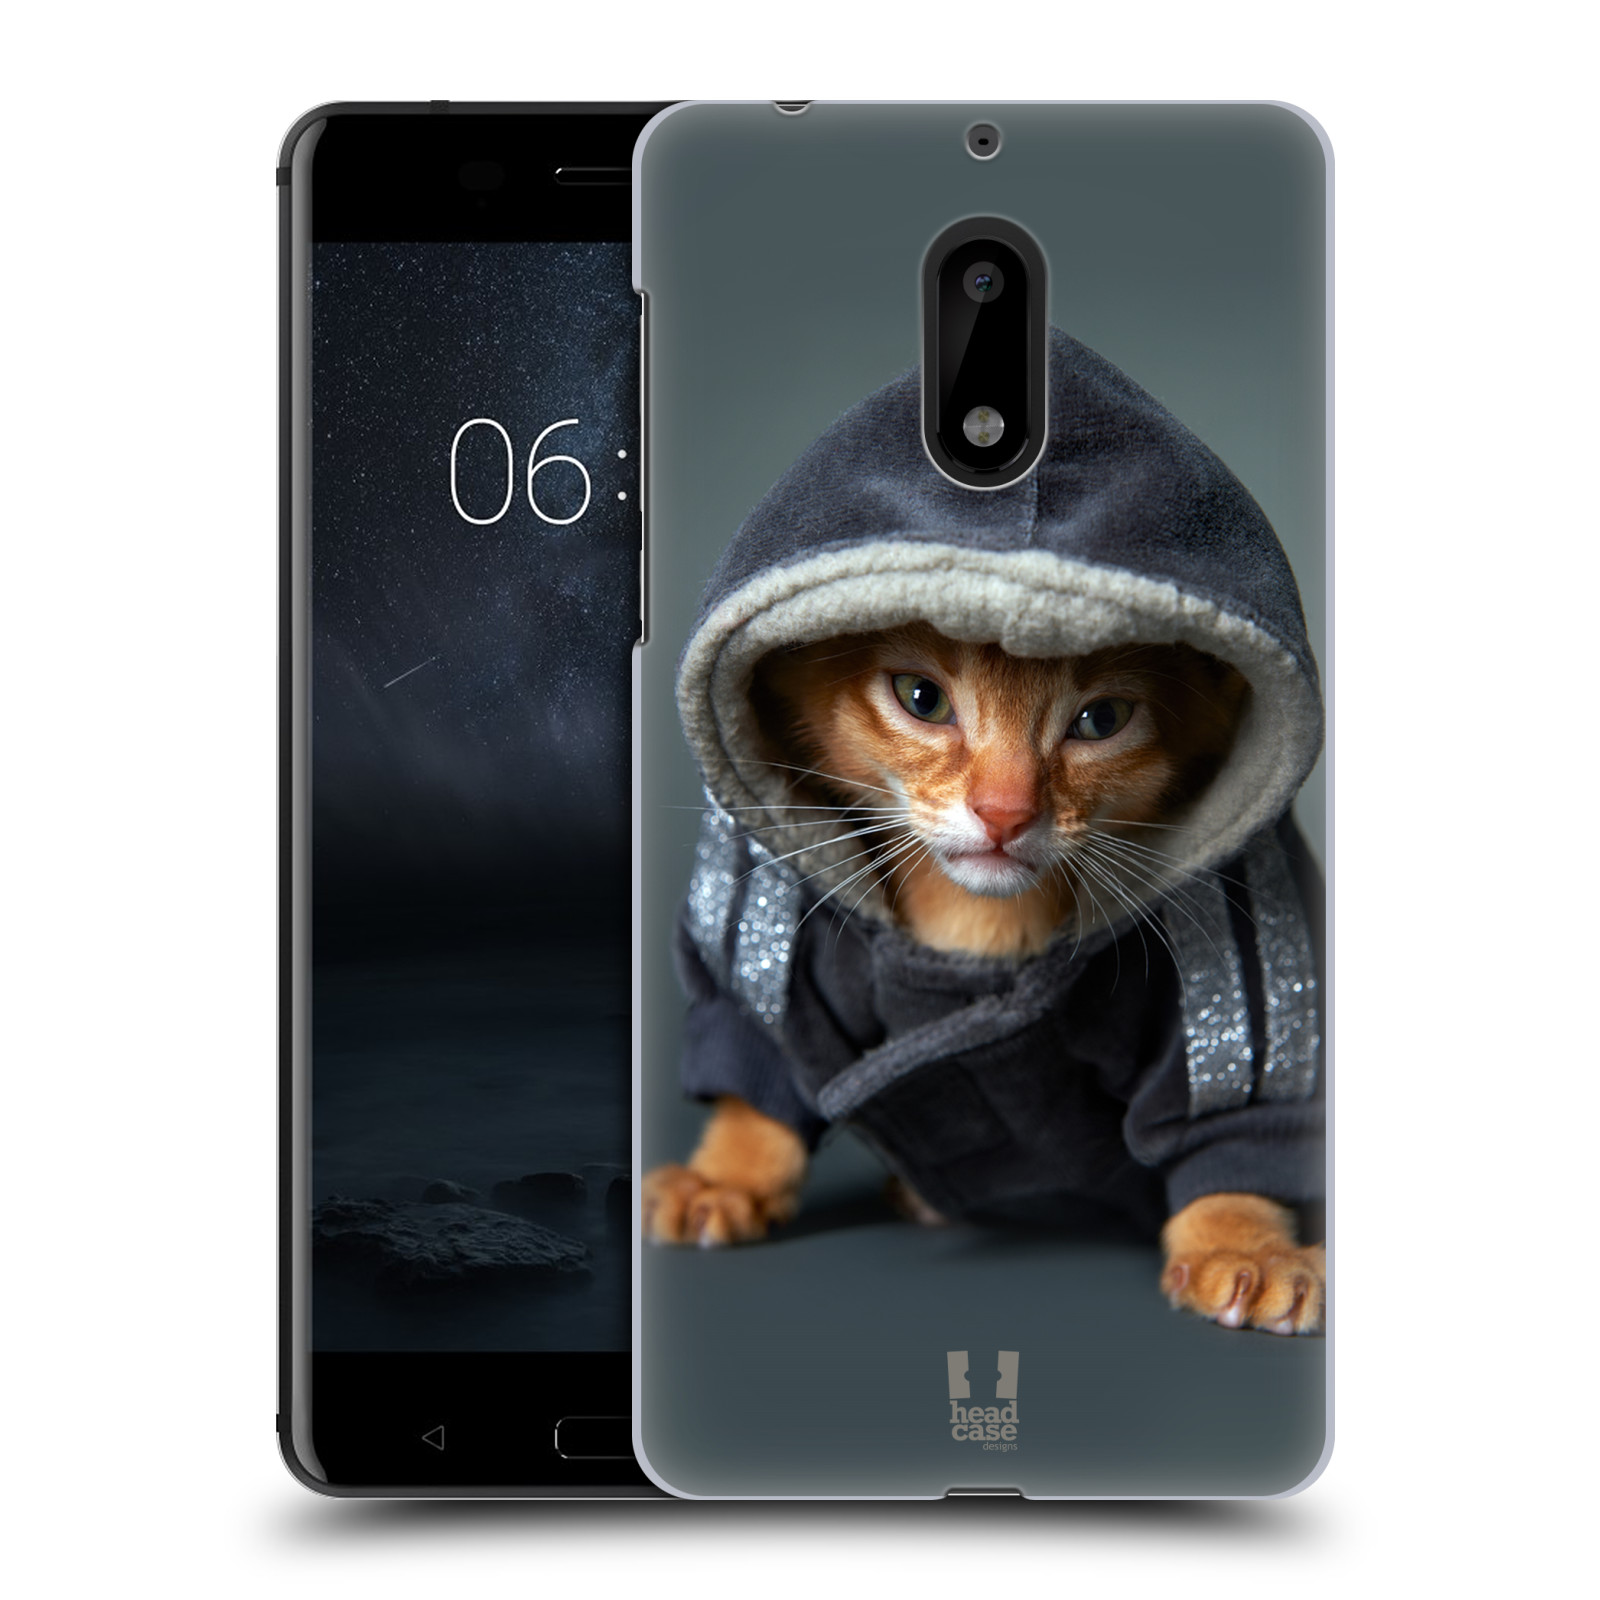 HEAD CASE plastový obal na mobil Nokia 6 vzor Legrační zvířátka kotě/kočička s kapucí